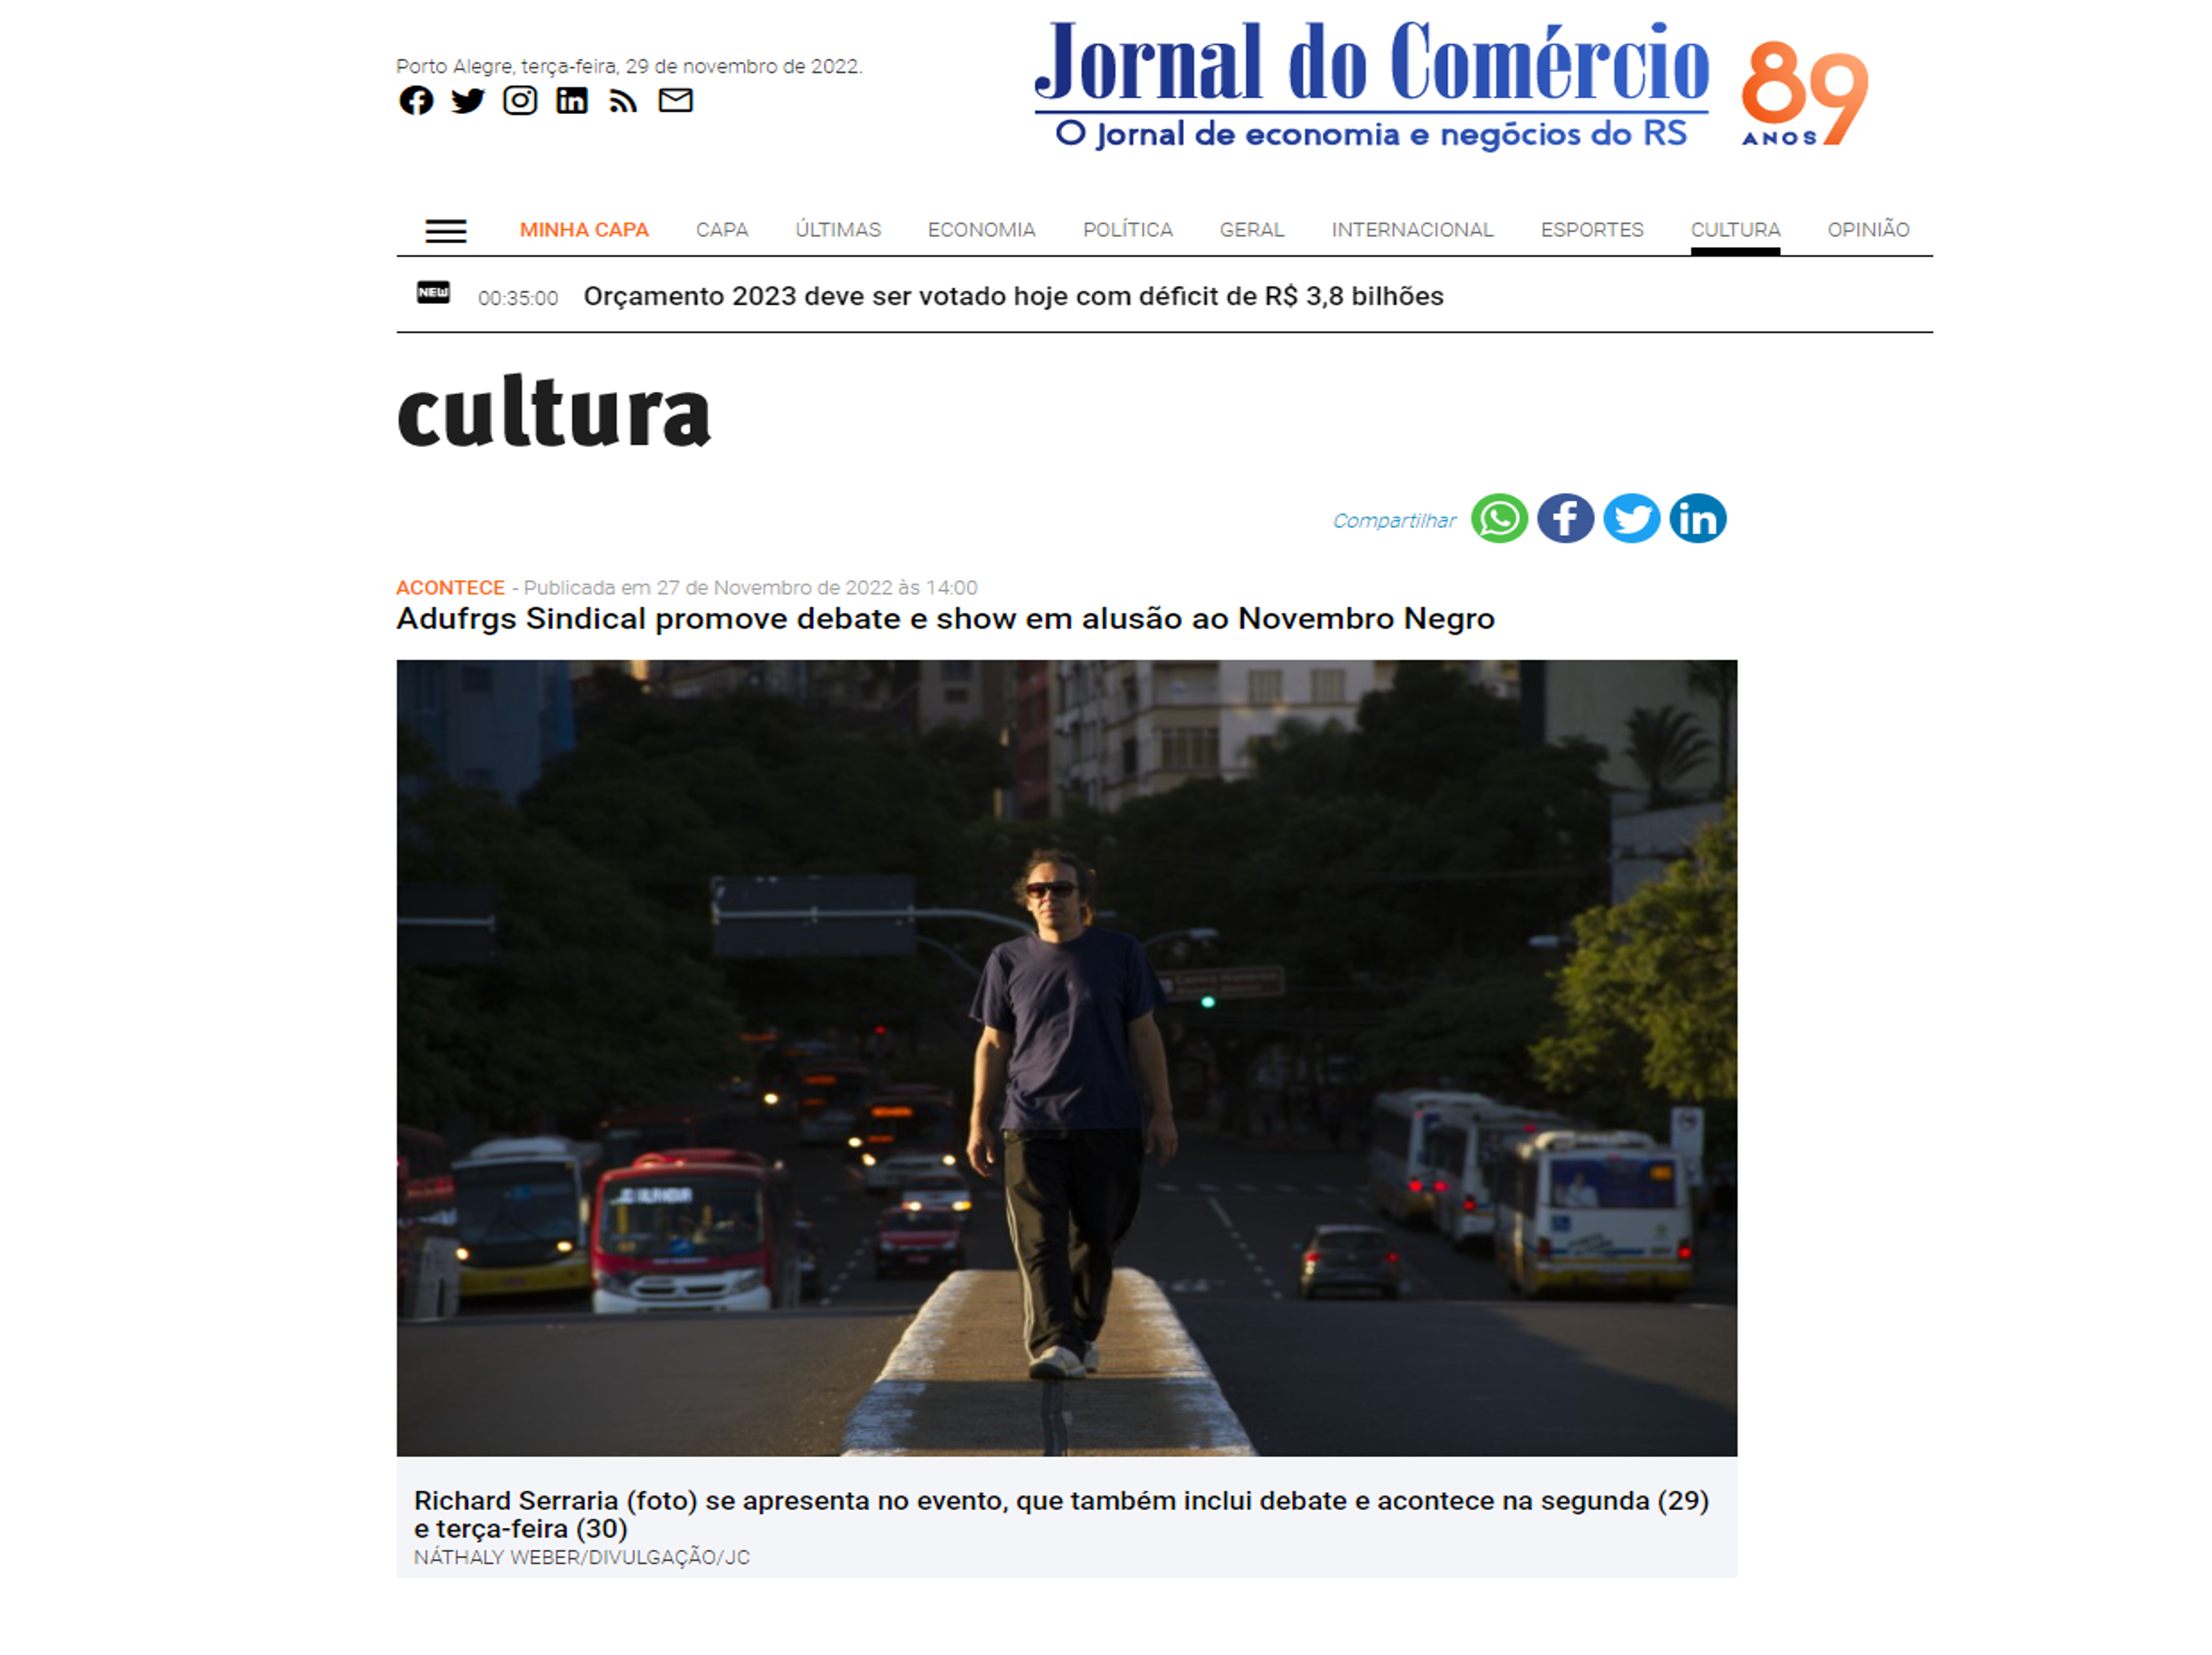 Jornal do Comércio destaca debate e show em alusão ao Novembro Negro realizados pela ADUFRGS-Sindical